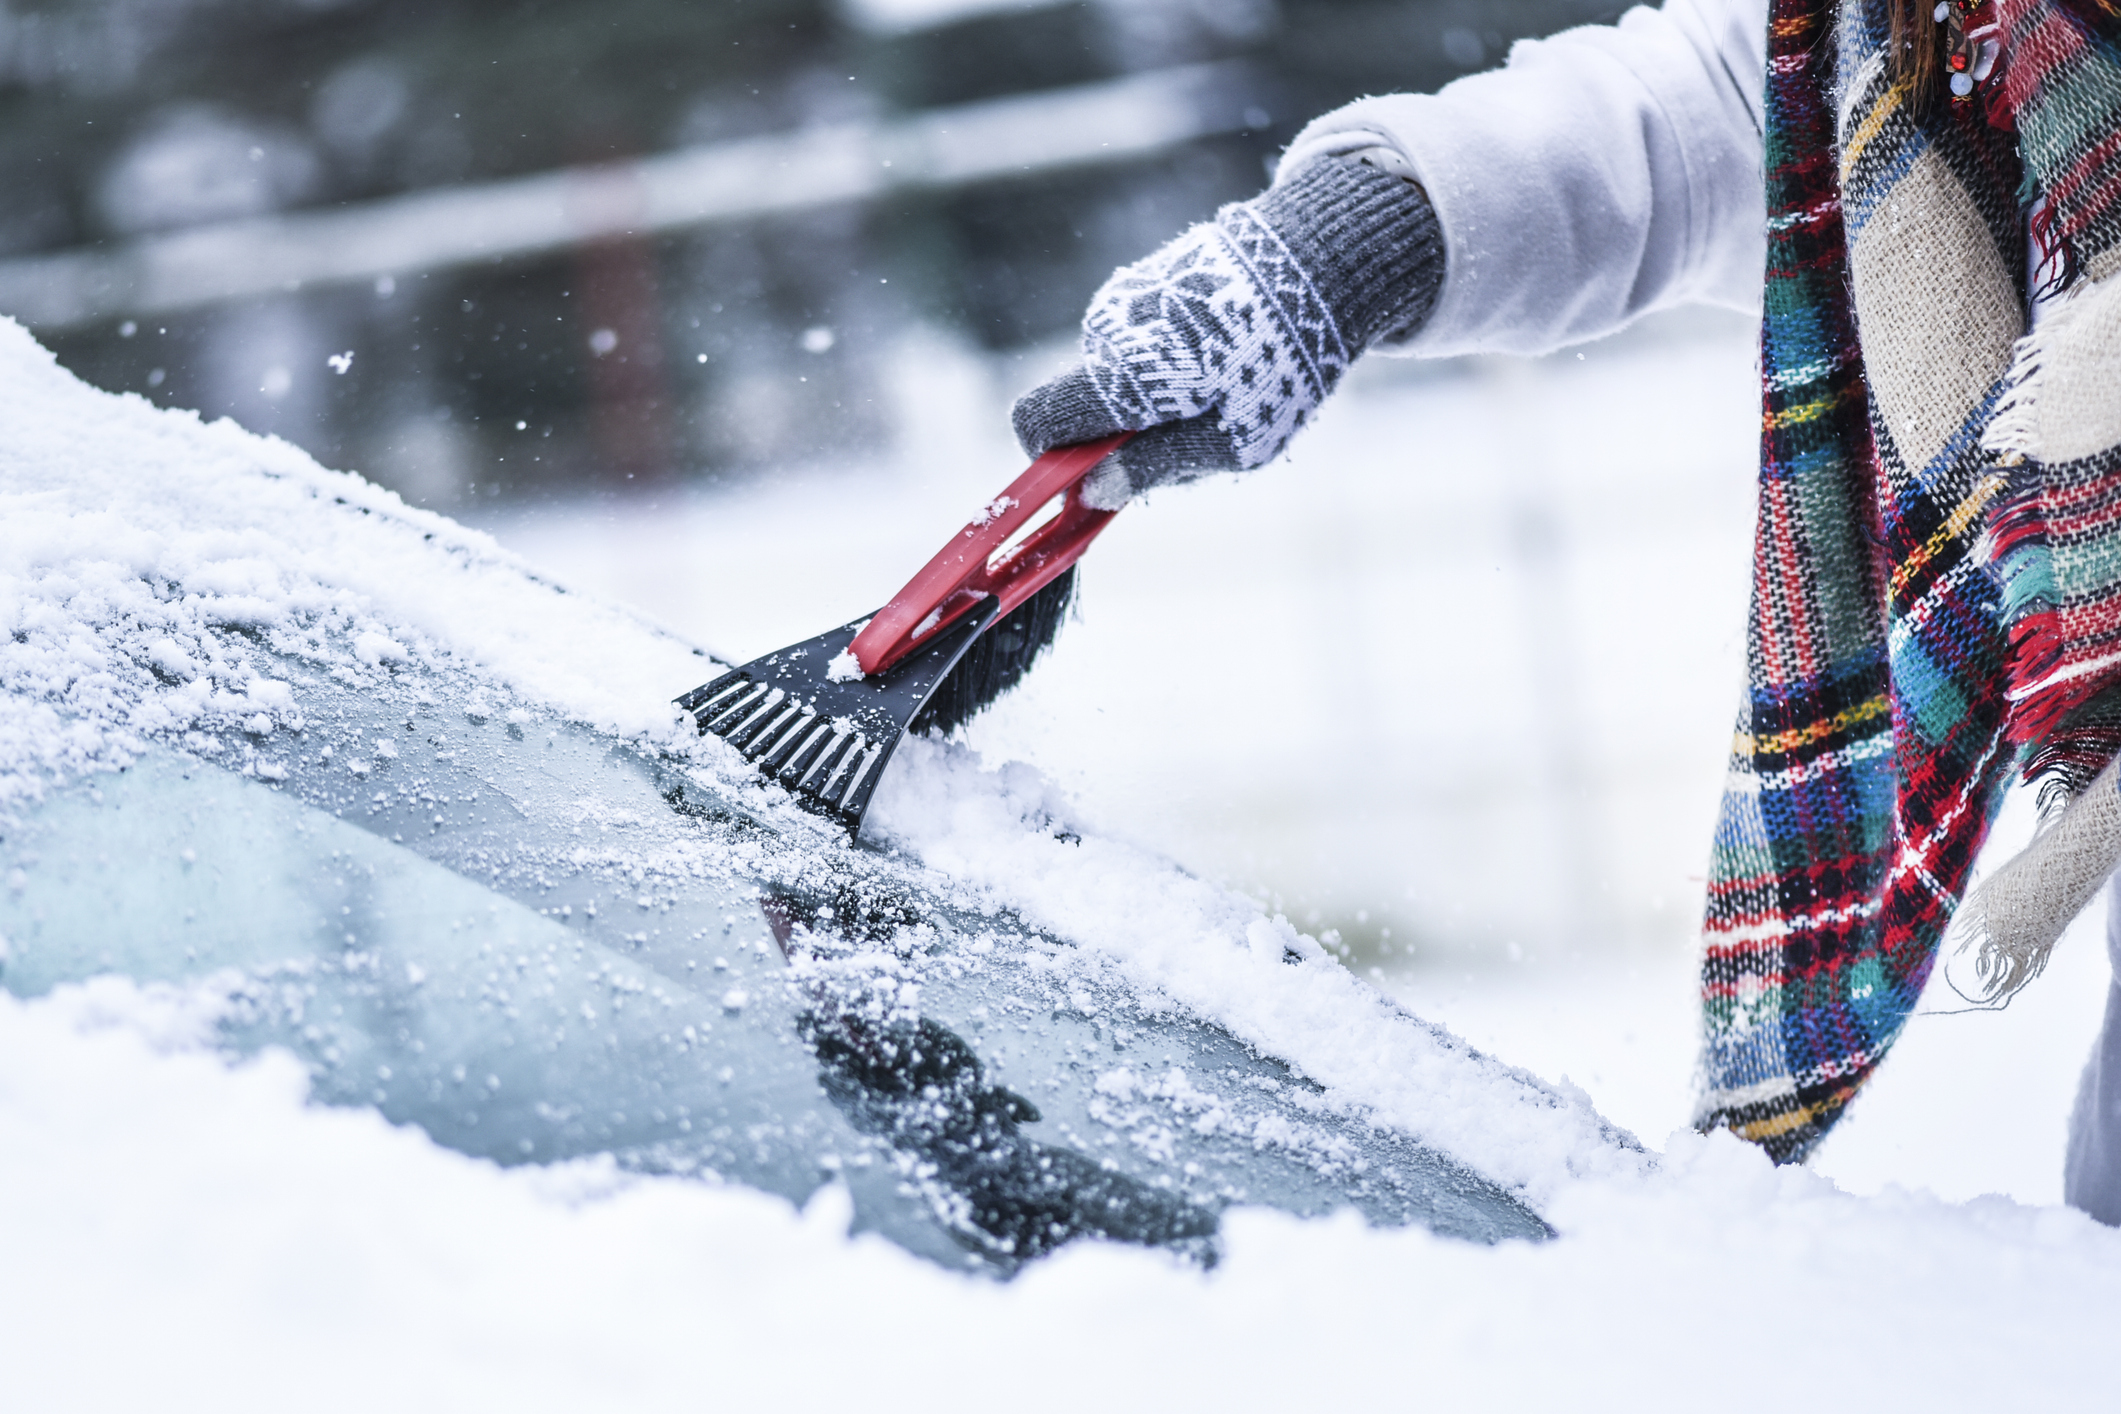 ᐅ Wie Schnee vom Auto entfernen? Die besten Tipps & Hilfsmittel